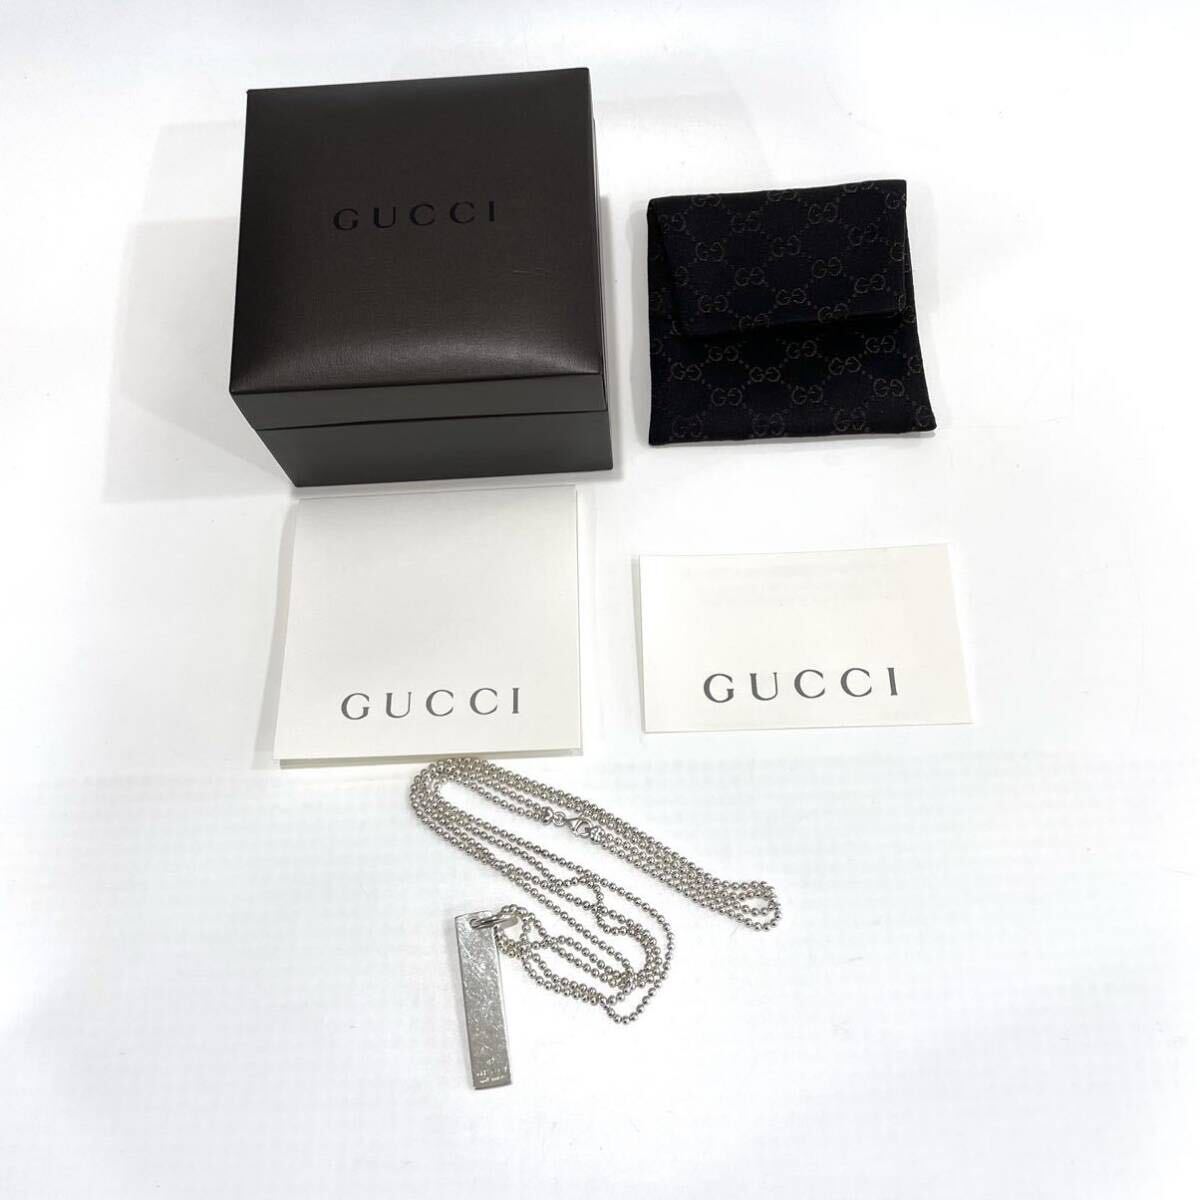 GUCCI Gucci plate подвеска колье 010595 09840 0006 SV925 порог двери Barbeau ru цепь коробка карта имеется бесплатная доставка 